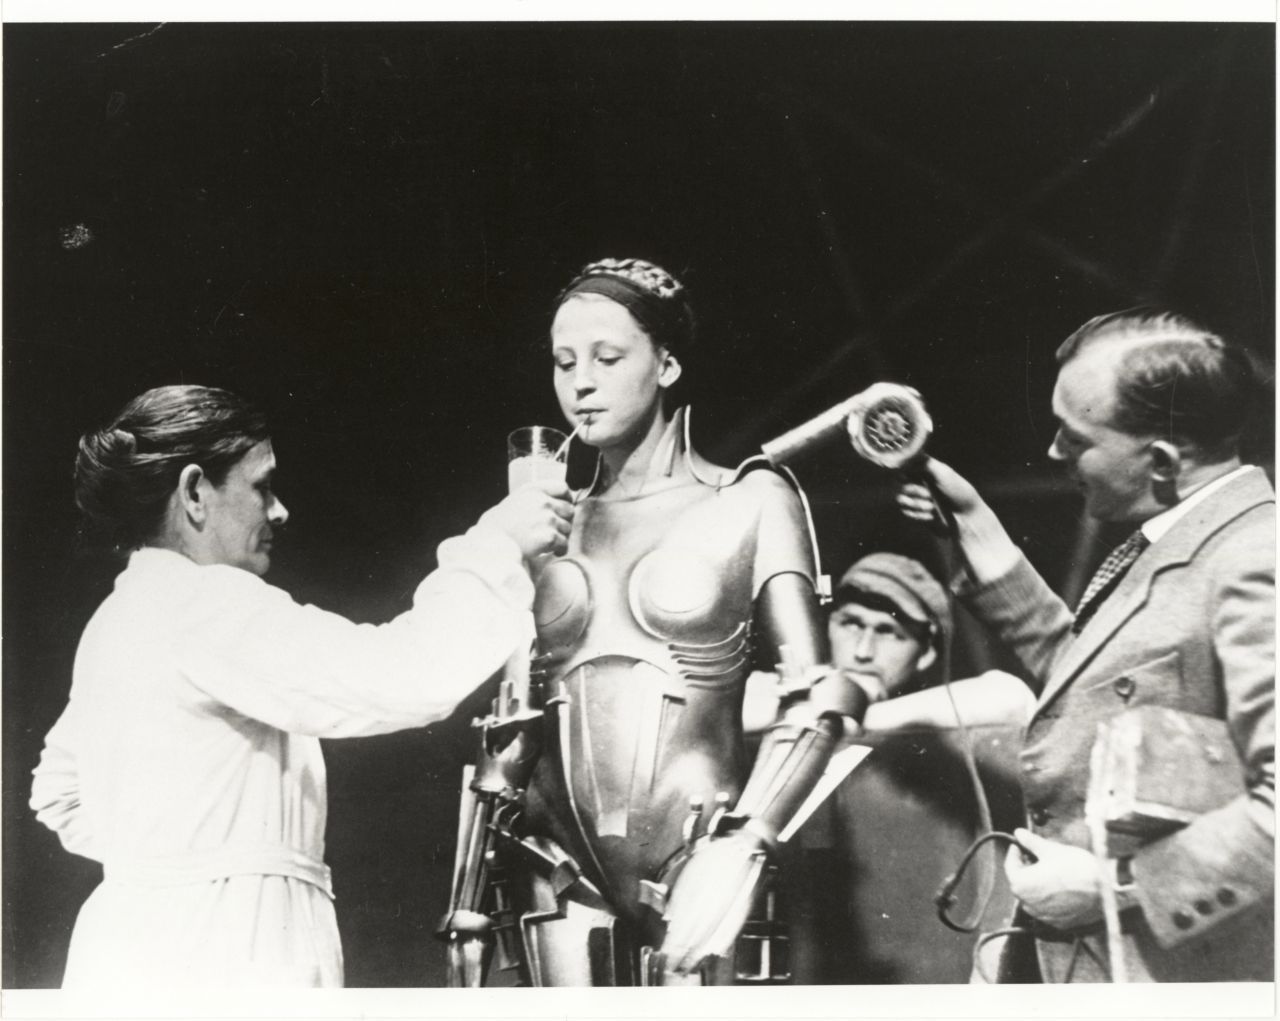 Schon 1927 ließ Regisseur Fritz Lang im Kultfilm "Metropolis" Schauspielerin Brigitte Helm (hier hinter den Kulissen) als Maschinenfrau Maria auftreten. Das metallisch-schimmernde Kostüm war aus Holz und so schwer, dass sie mehrmals zusammenbrach. Der Stummfilm gilt als erster Science-Fiction-Langfilm und ist Teil des Weltdokumenten-Erbes der UNESCO.